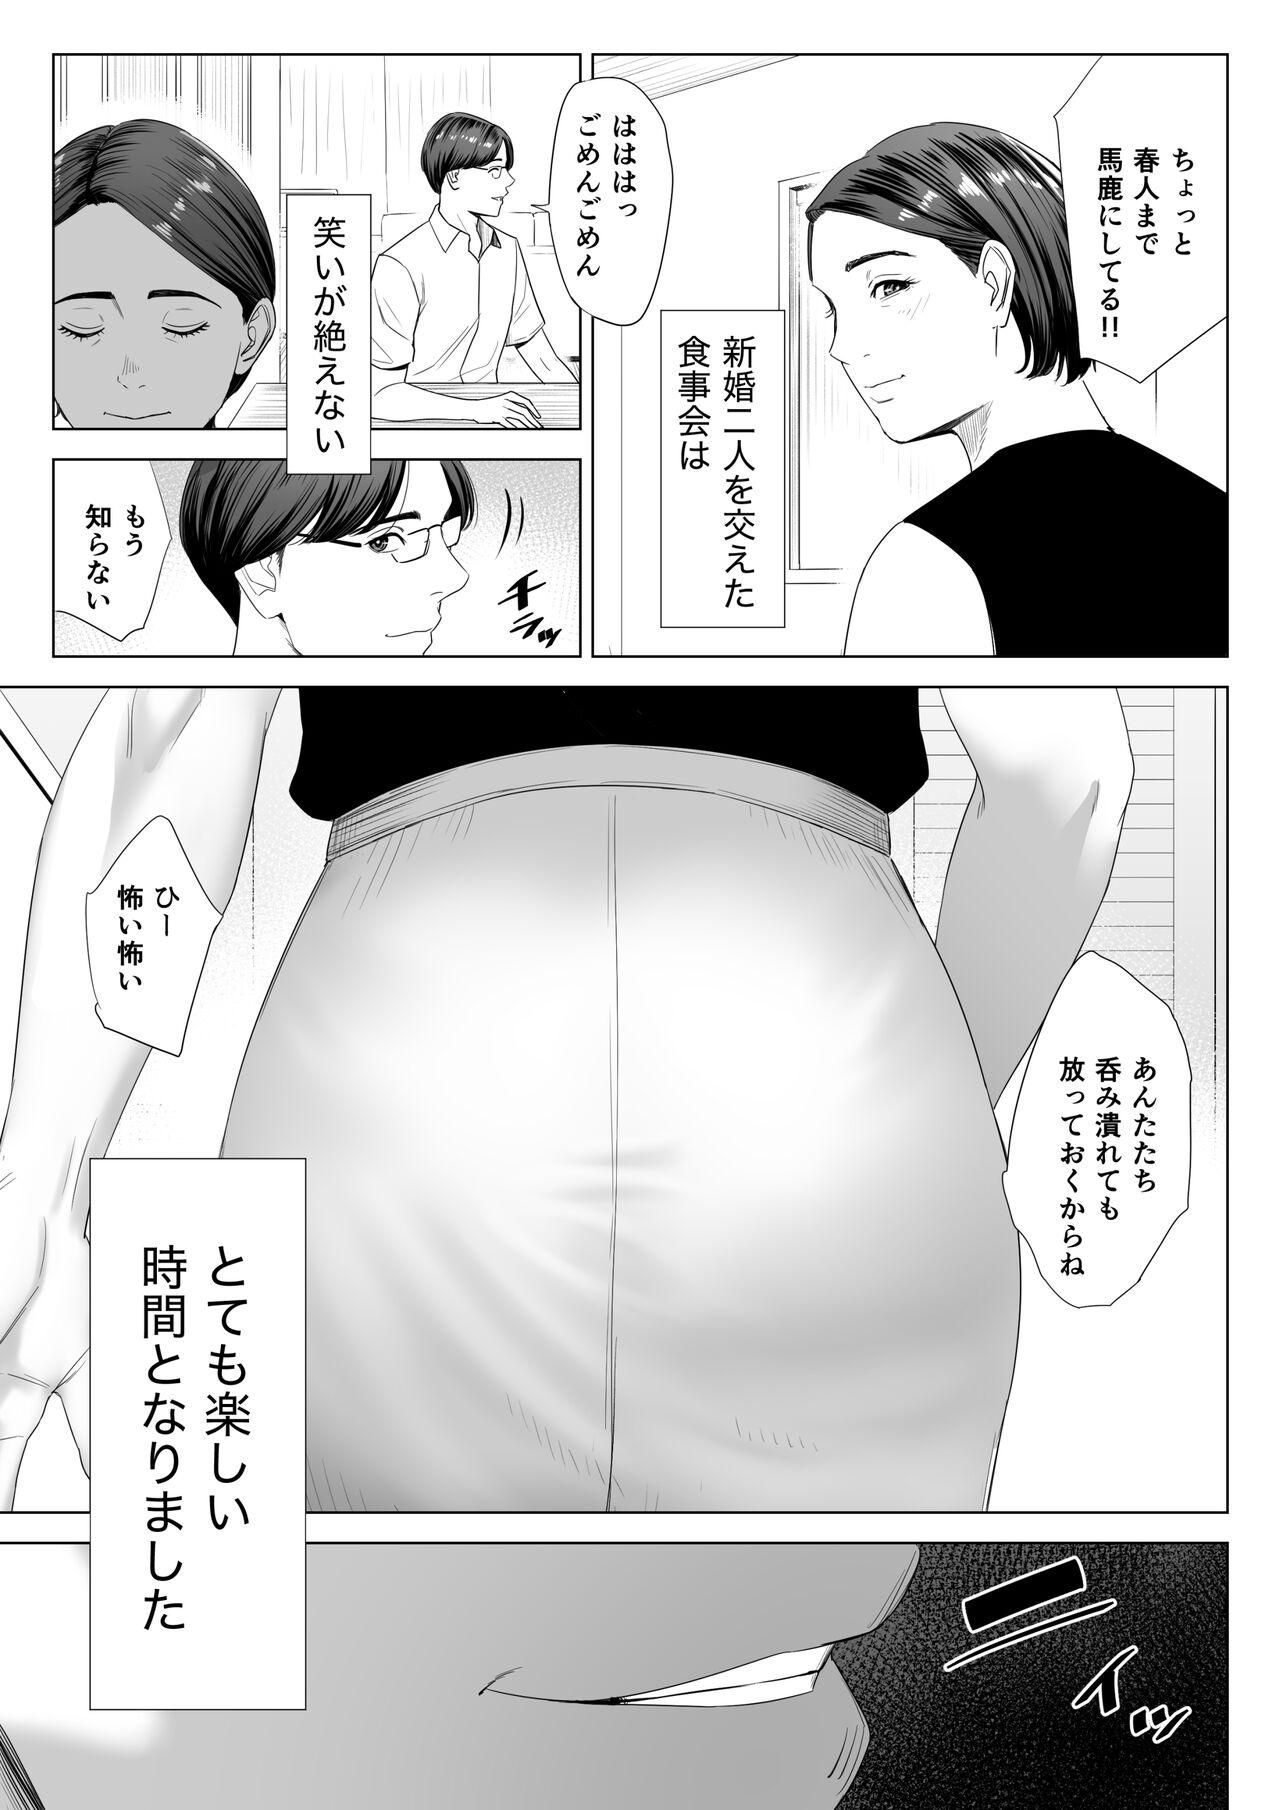 Oral Porn Gibo no tsukaeru karada. - Original Anal Porn - Page 8